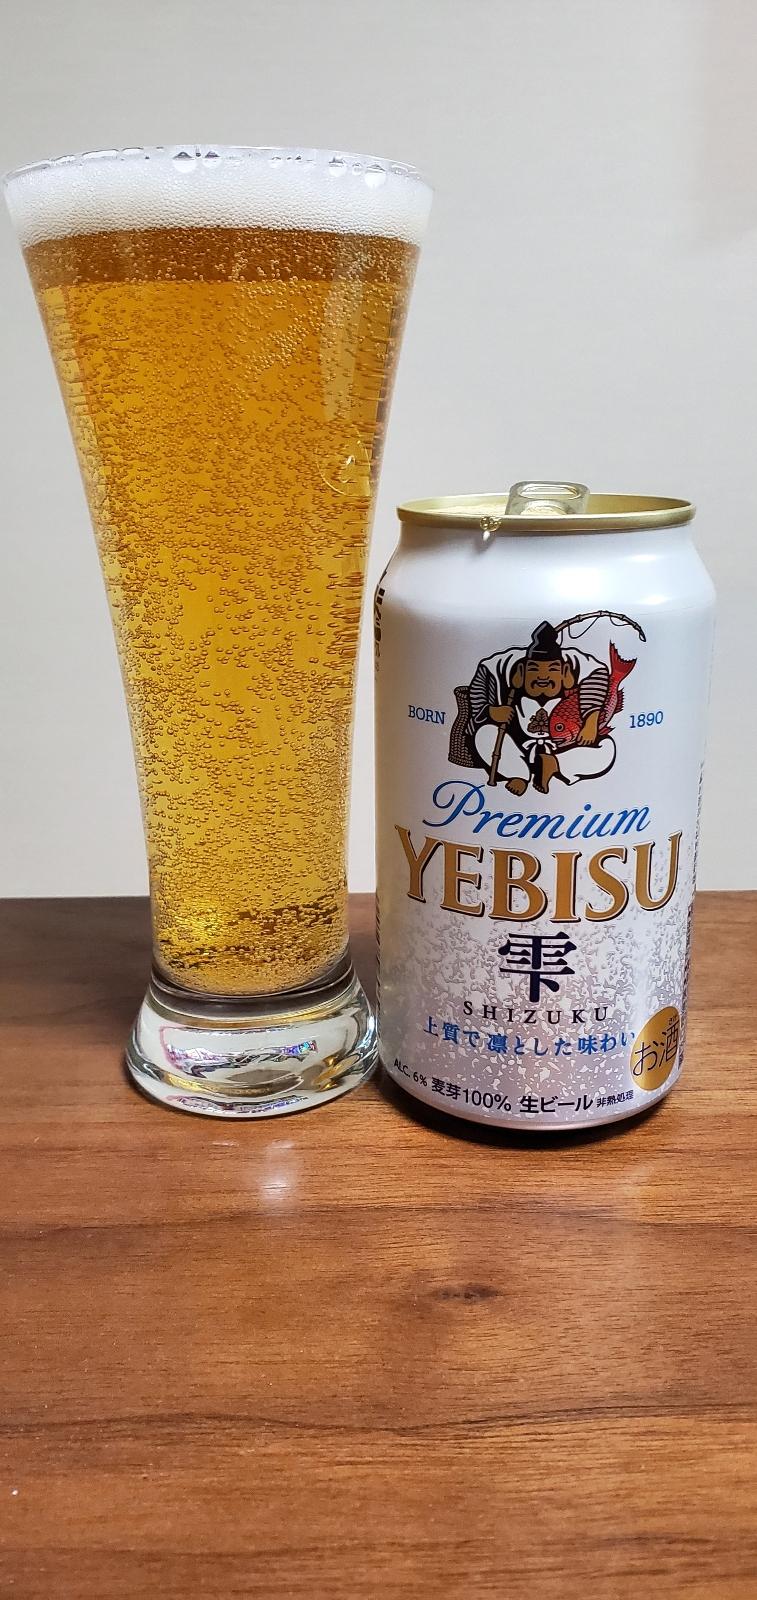 Yebisu Premium Shizuku